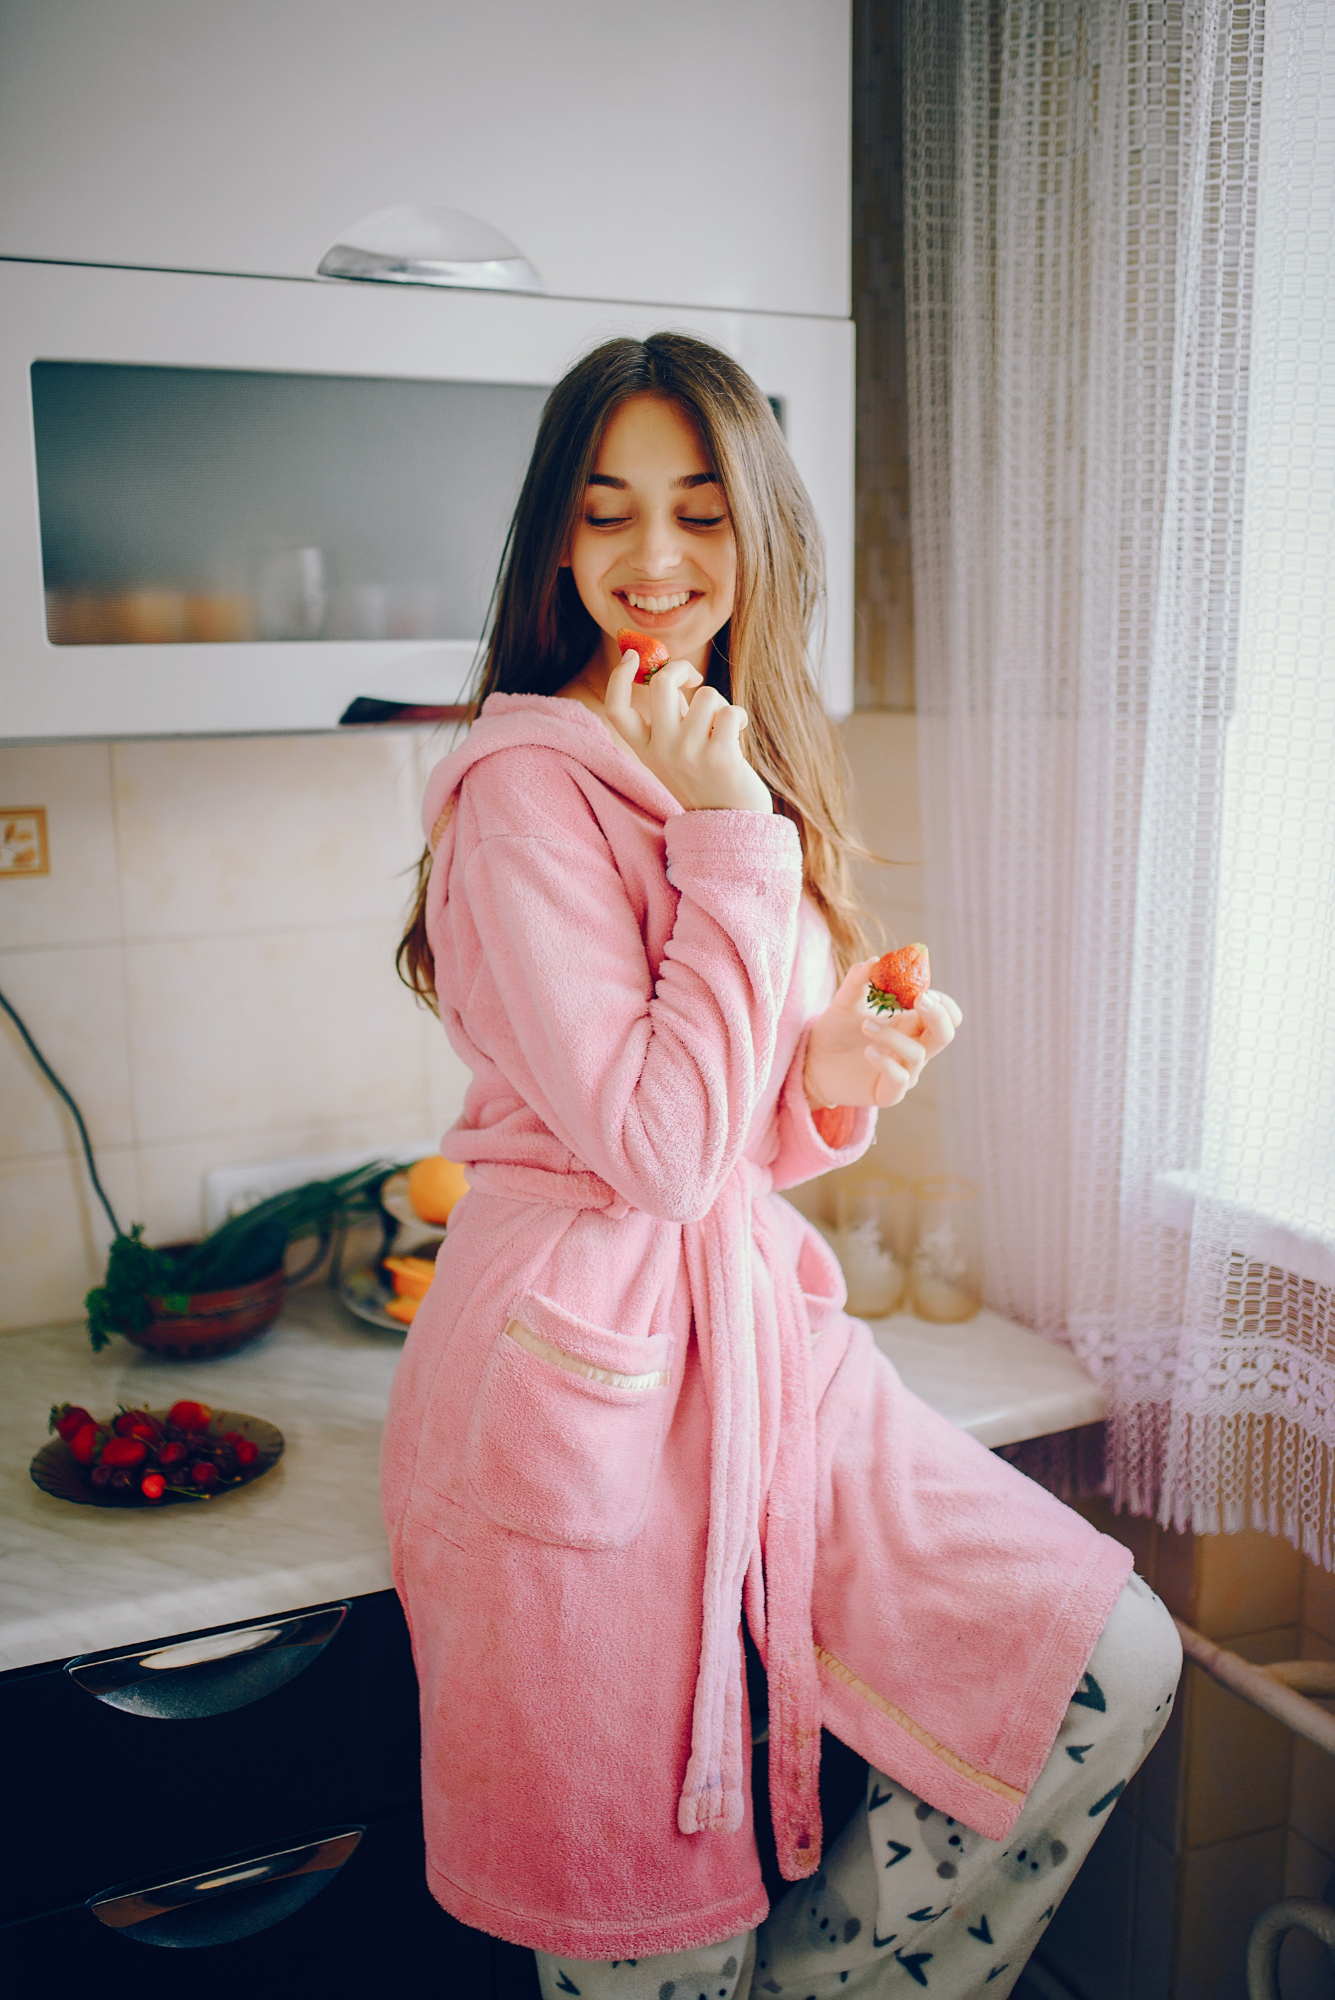 Une femme sourit alors qu'elle est vêtue d'une robe et d'un pyjama | Source : Freepik